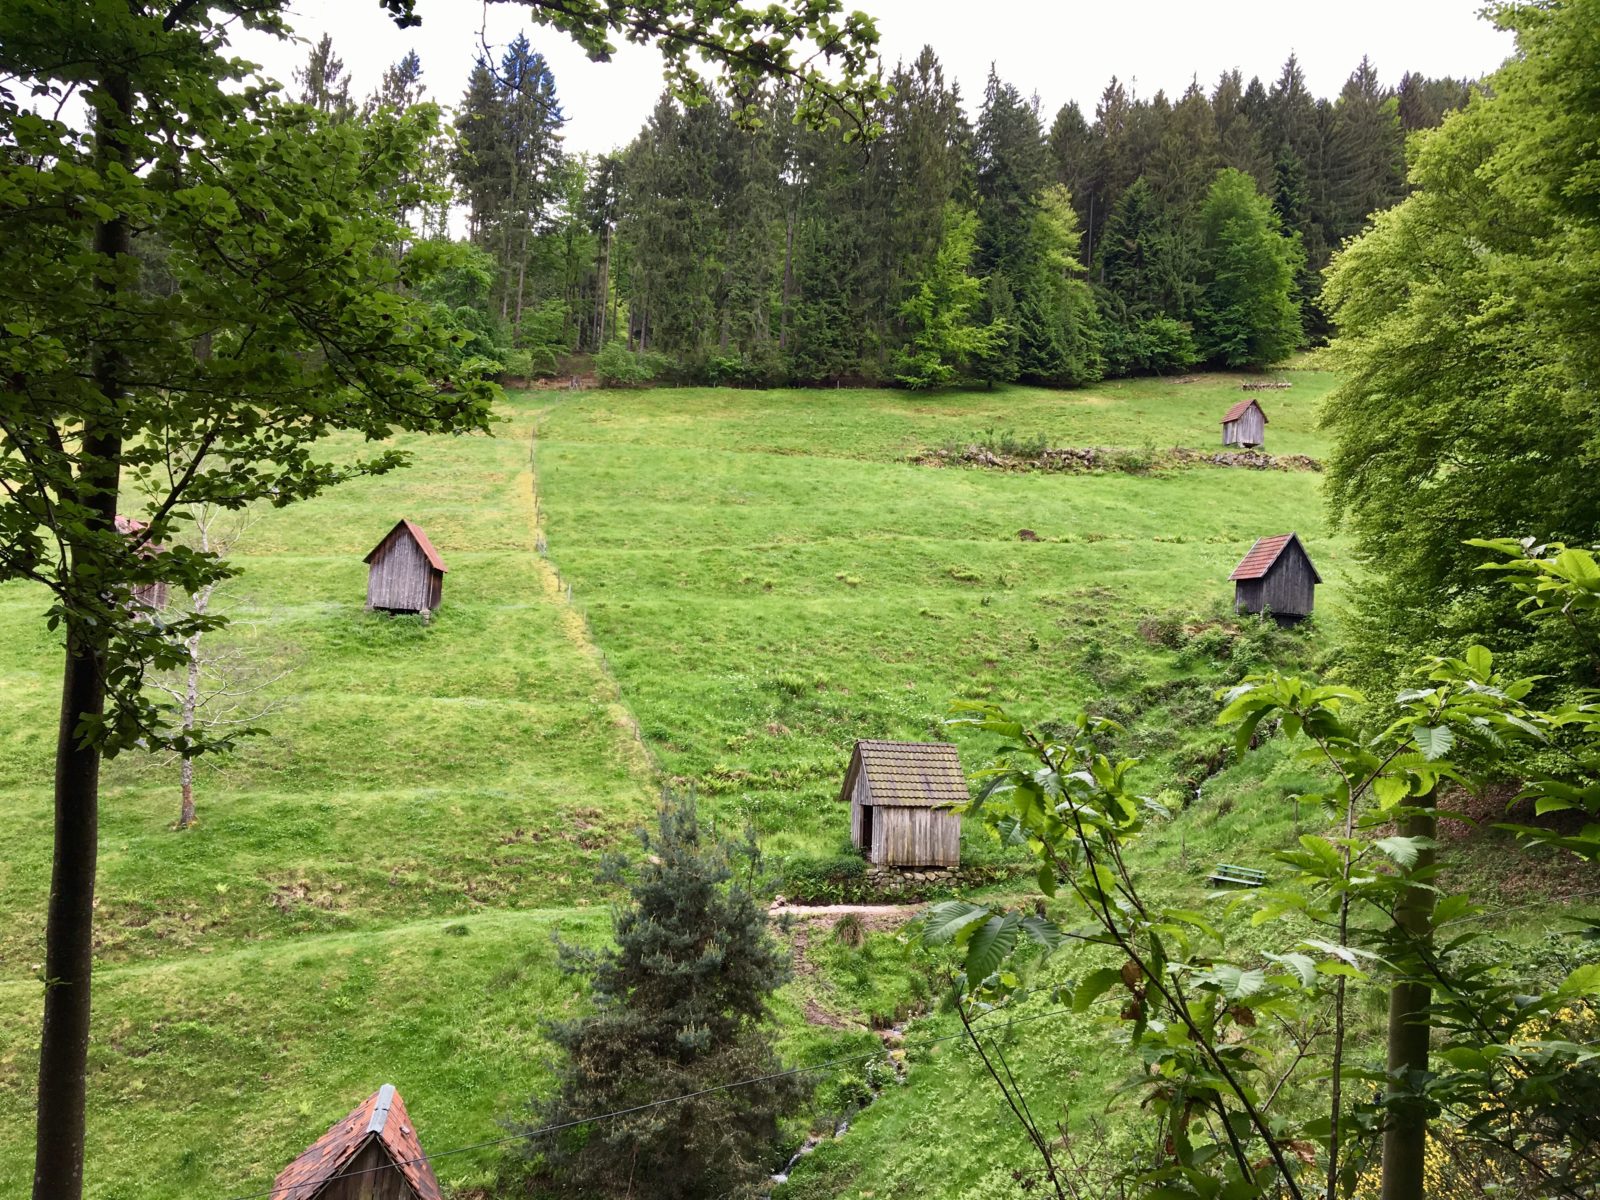 Nette Pfade und tolle Landschaften bei den Hüttentouren und Trailcamps im Schwarzwald